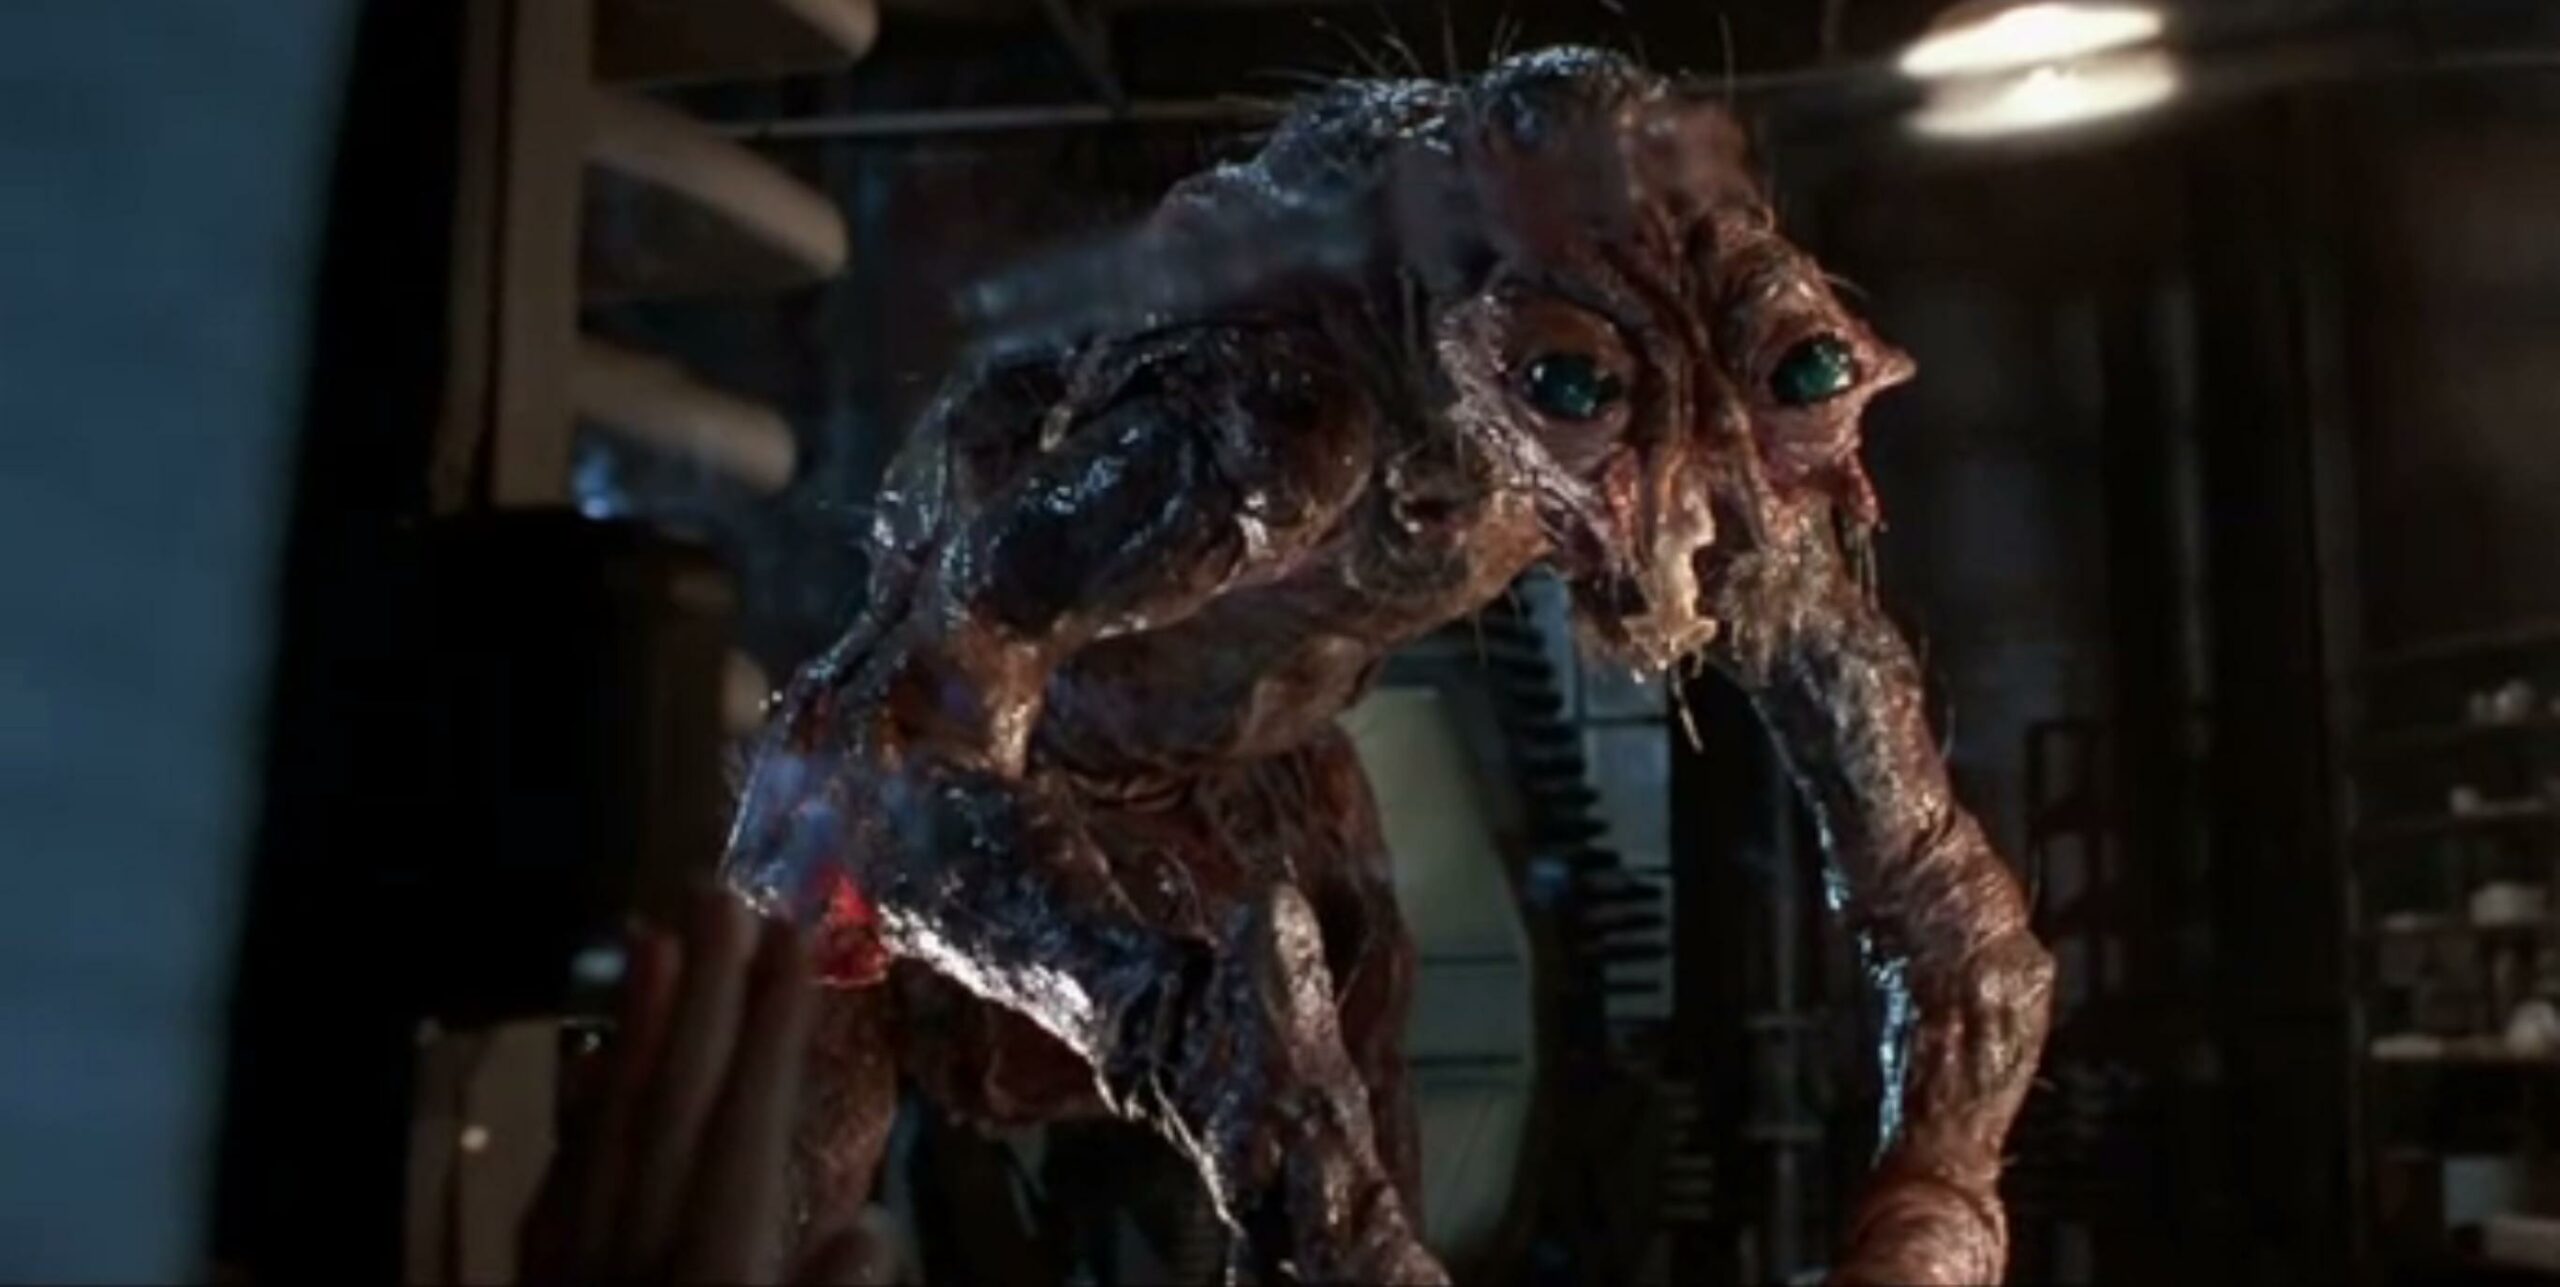 The Fly (La Mosca): "la disgustosa" decadenza umana secondo David Cronenberg